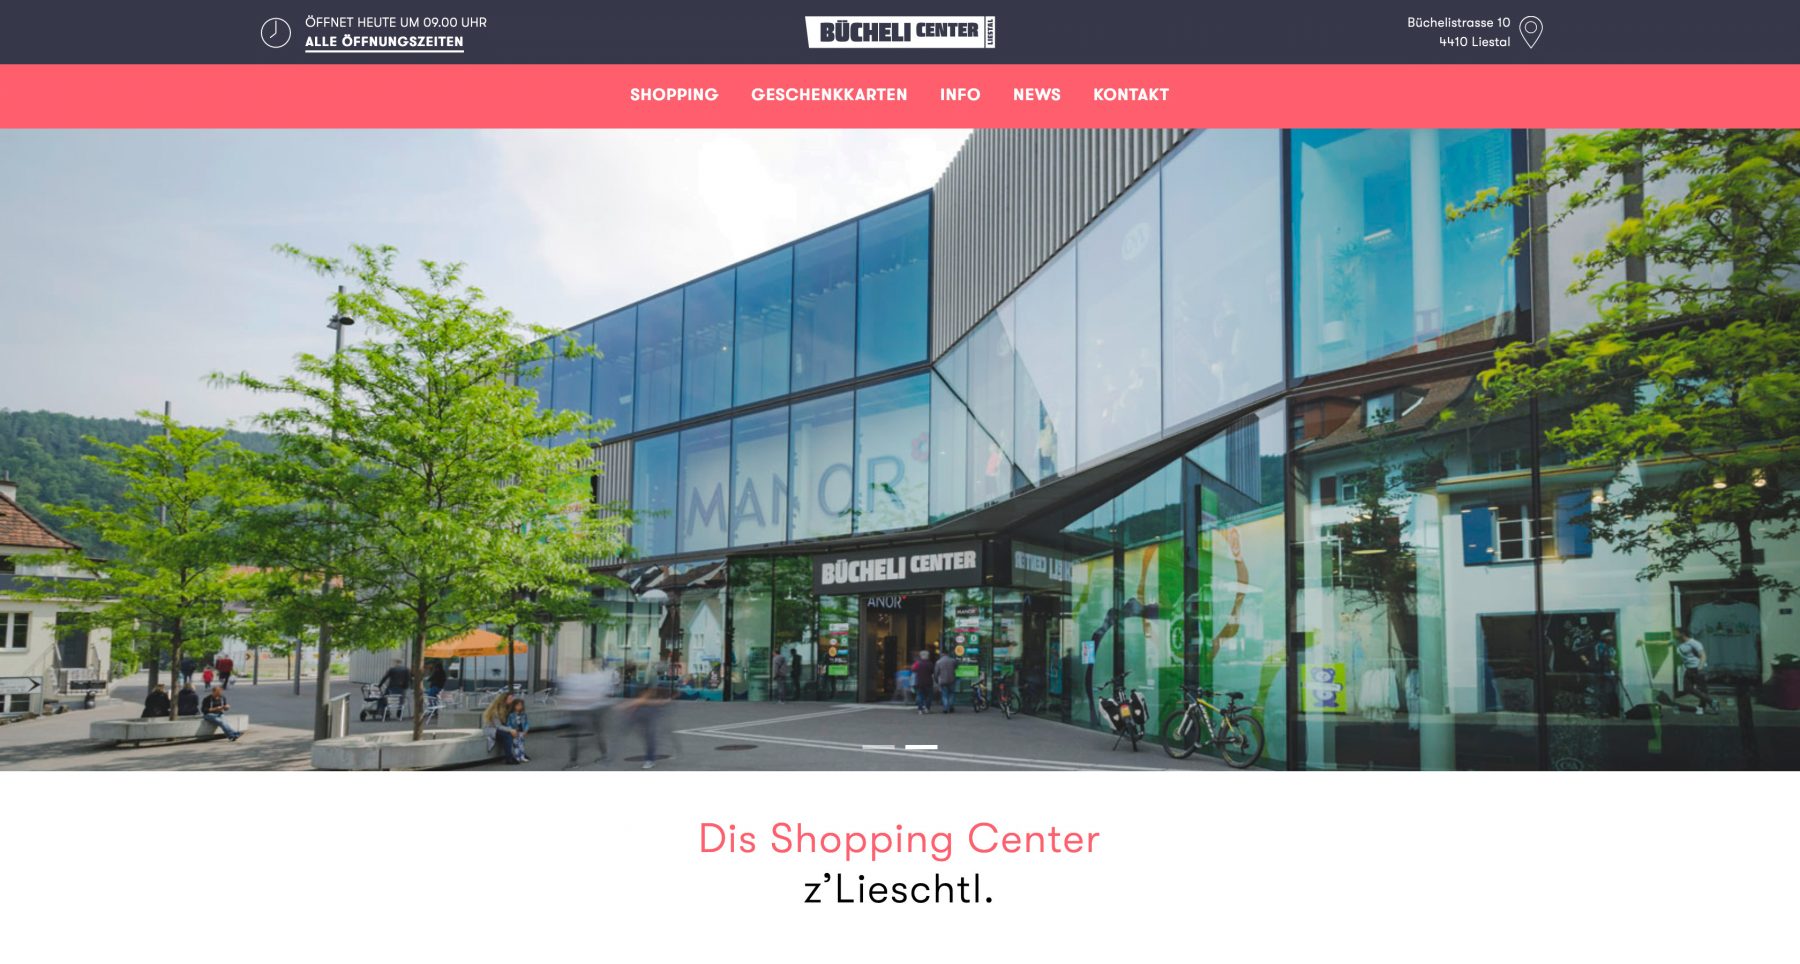 OHO Design, Bücheli Center